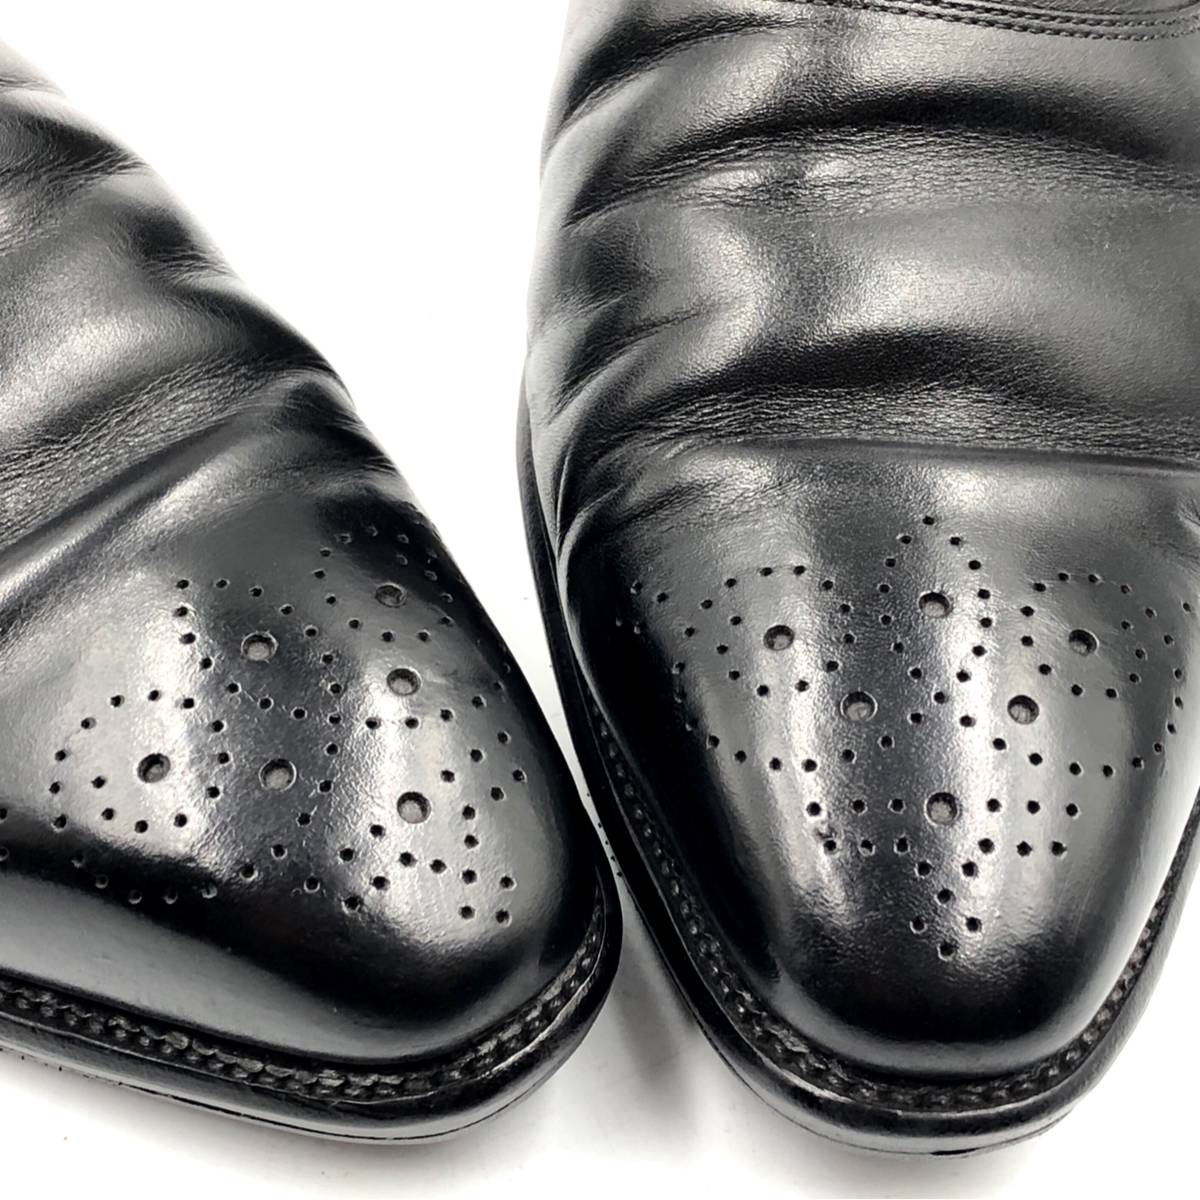 即決 SCOTCH GRAIN スコッチグレイン 26cm NL-2243 メンズ レザーシューズ プレーントゥ 黒 ブラック 革靴 皮靴 ビジネスシューズ